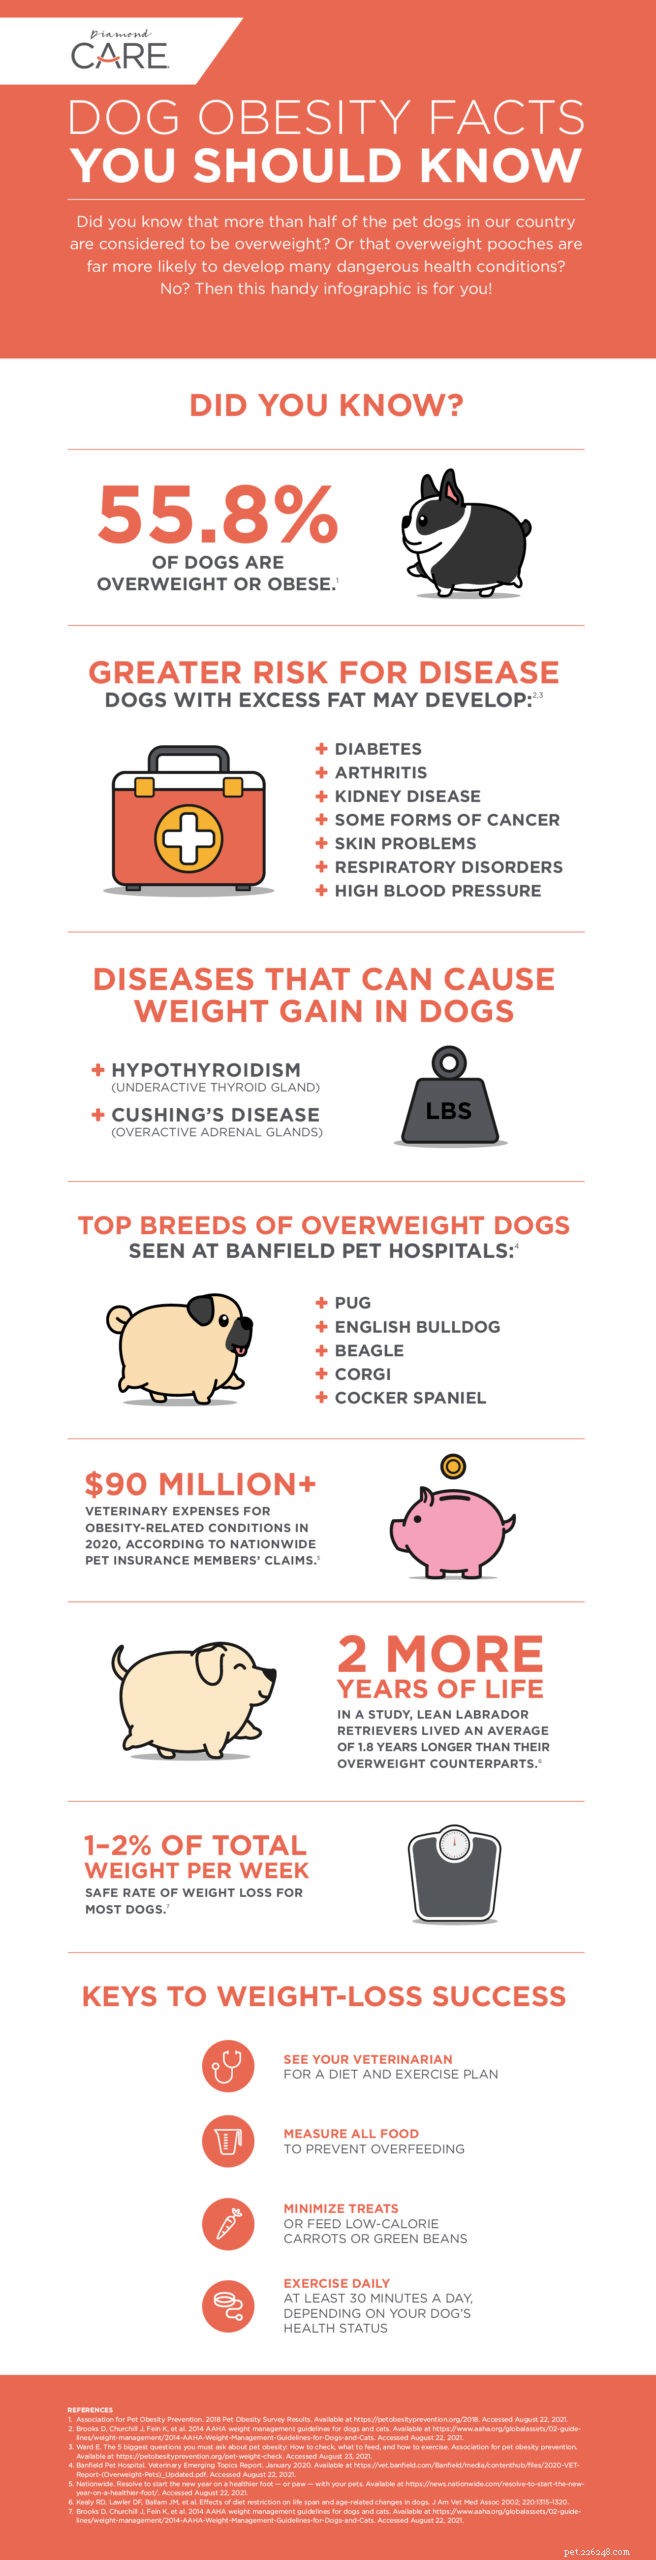 犬の肥満に関するいくつかの事実を明らかにする 